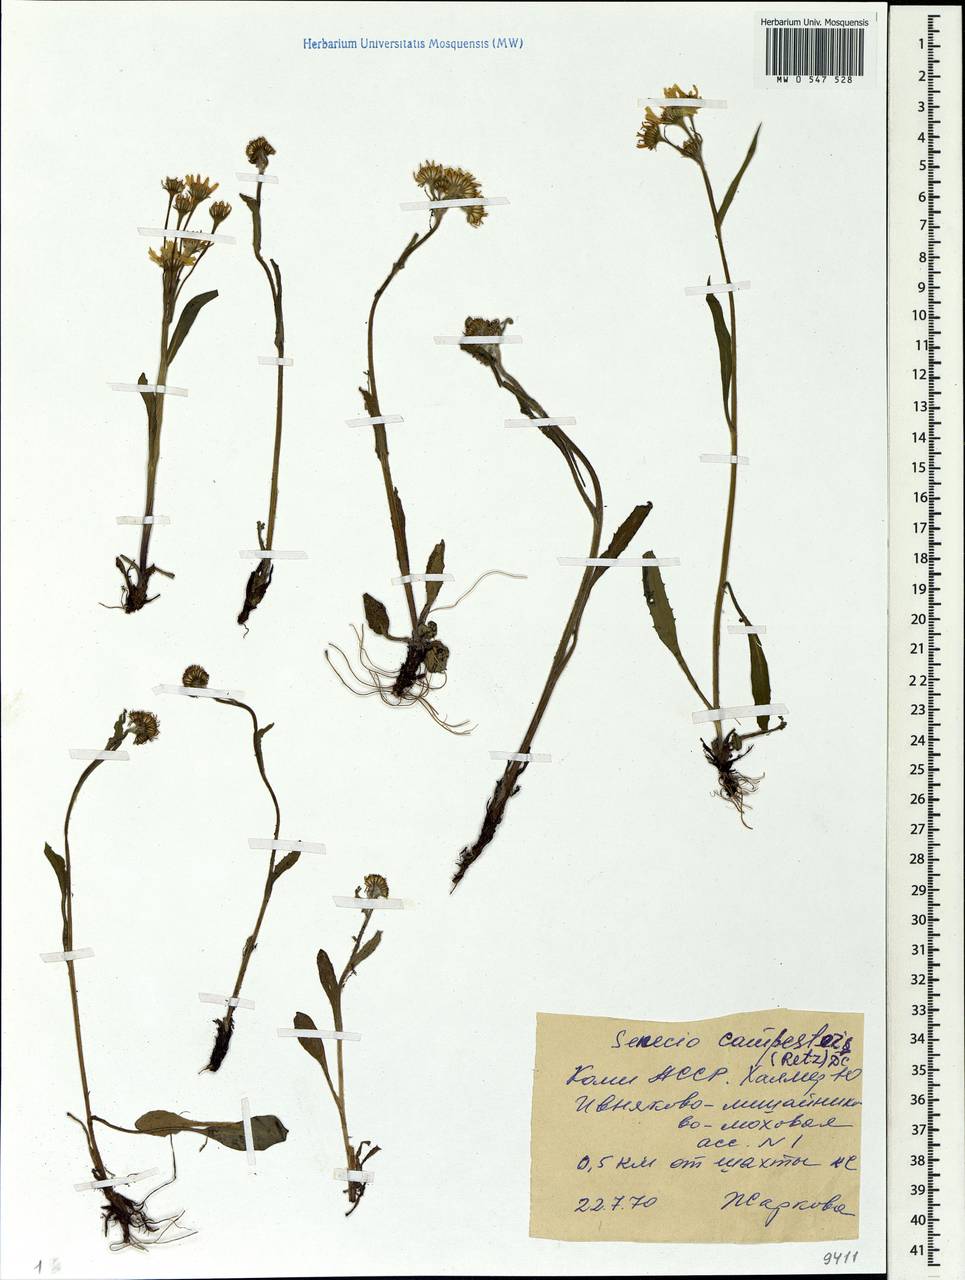 Tephroseris integrifolia subsp. integrifolia, Eastern Europe, Northern region (E1) (Russia)